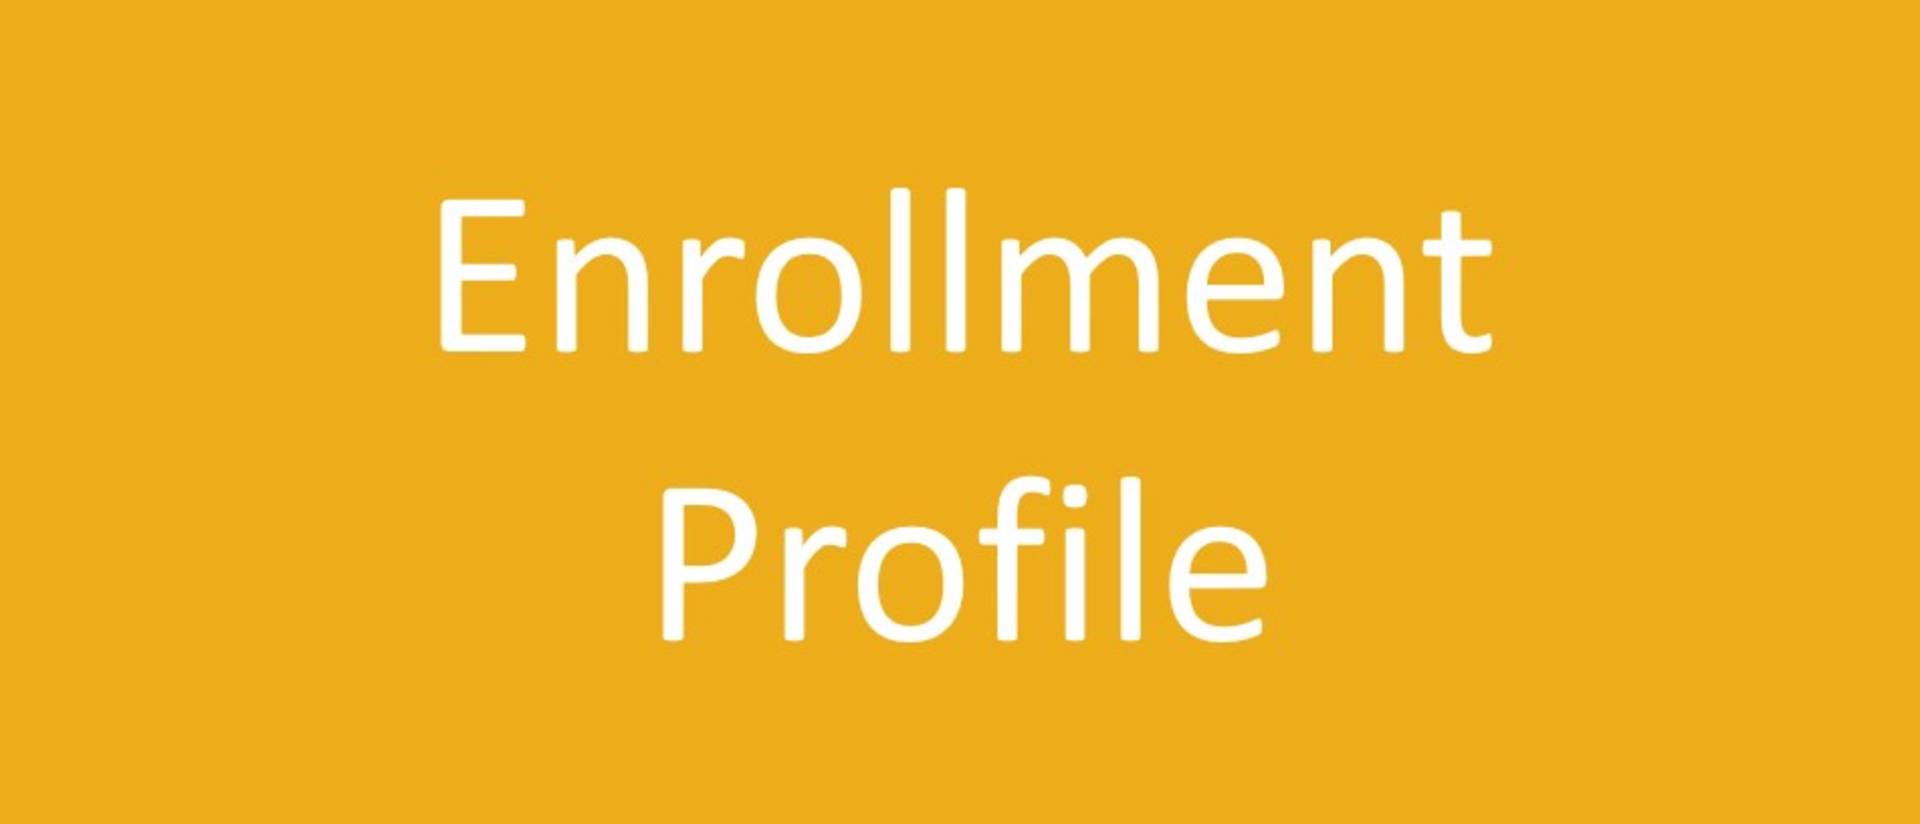 Enrollment Profile